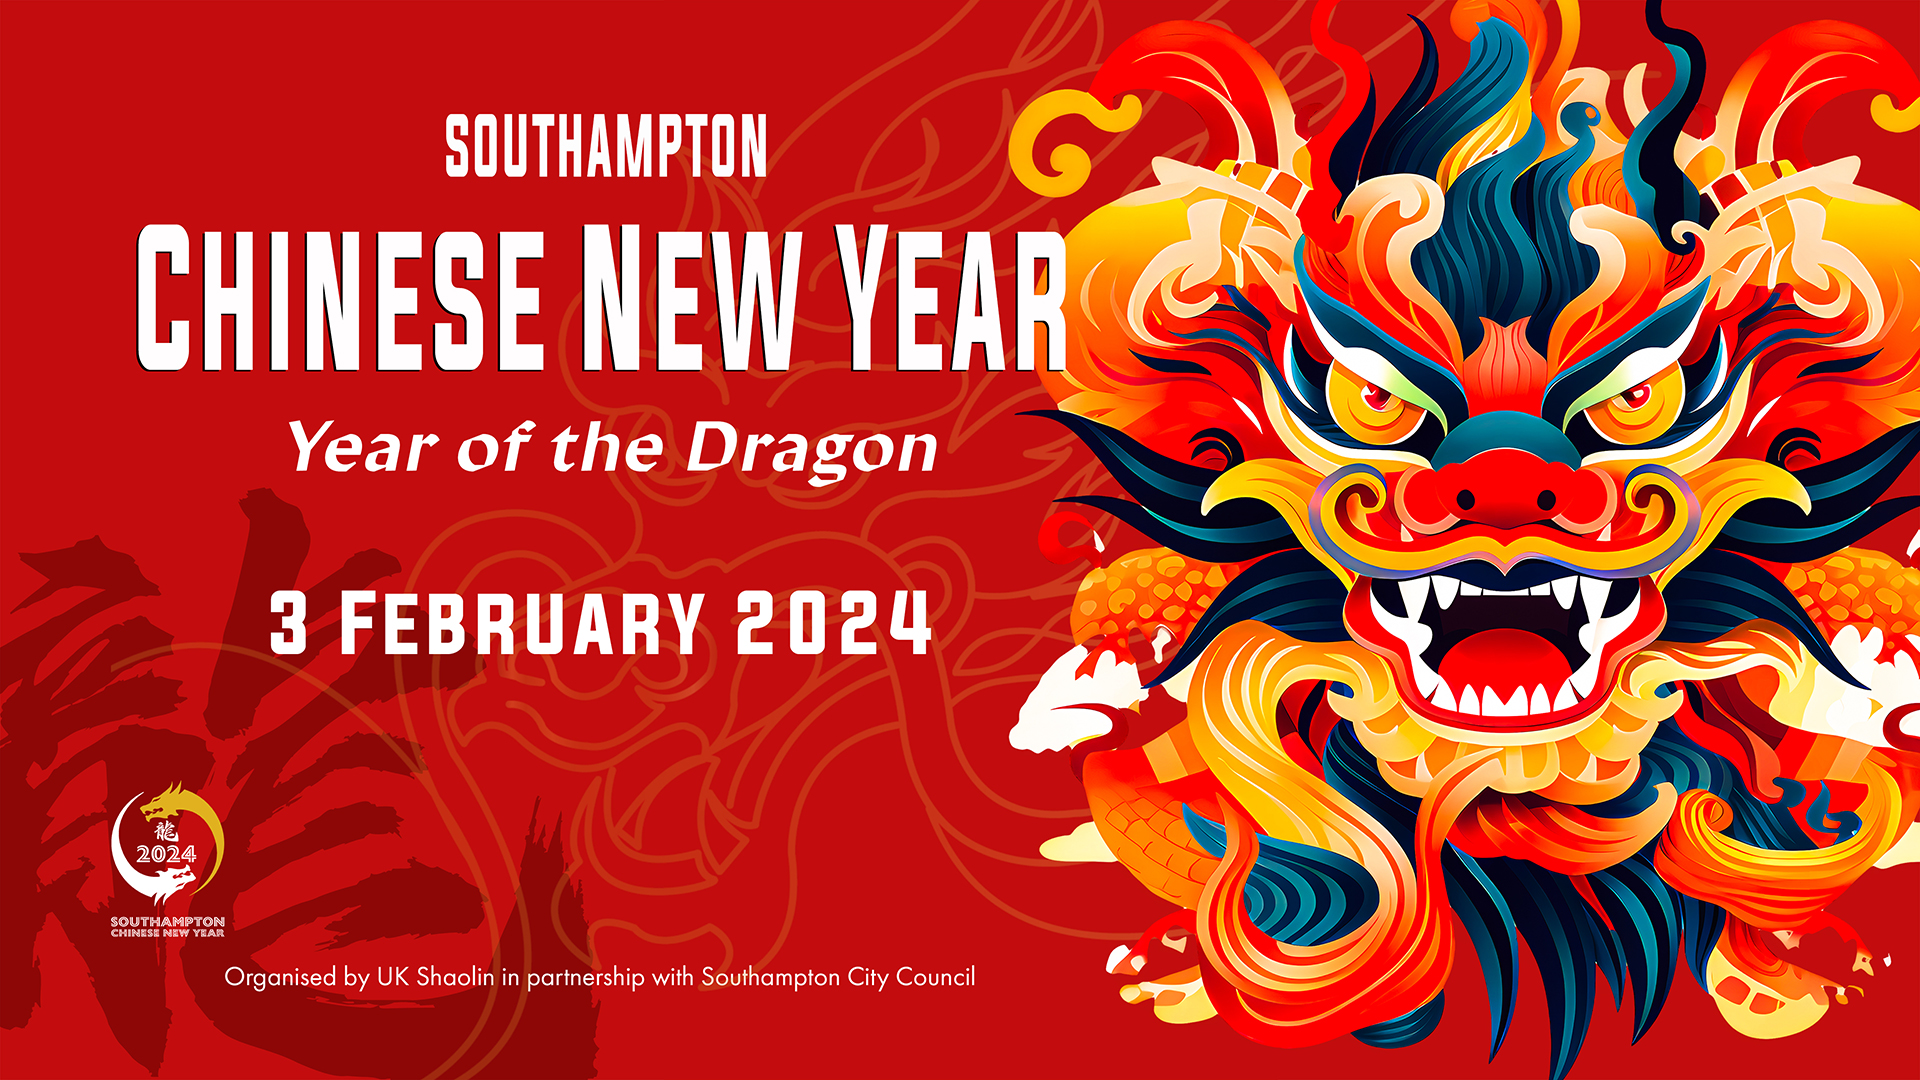 Southampton Chinese New Year 2024